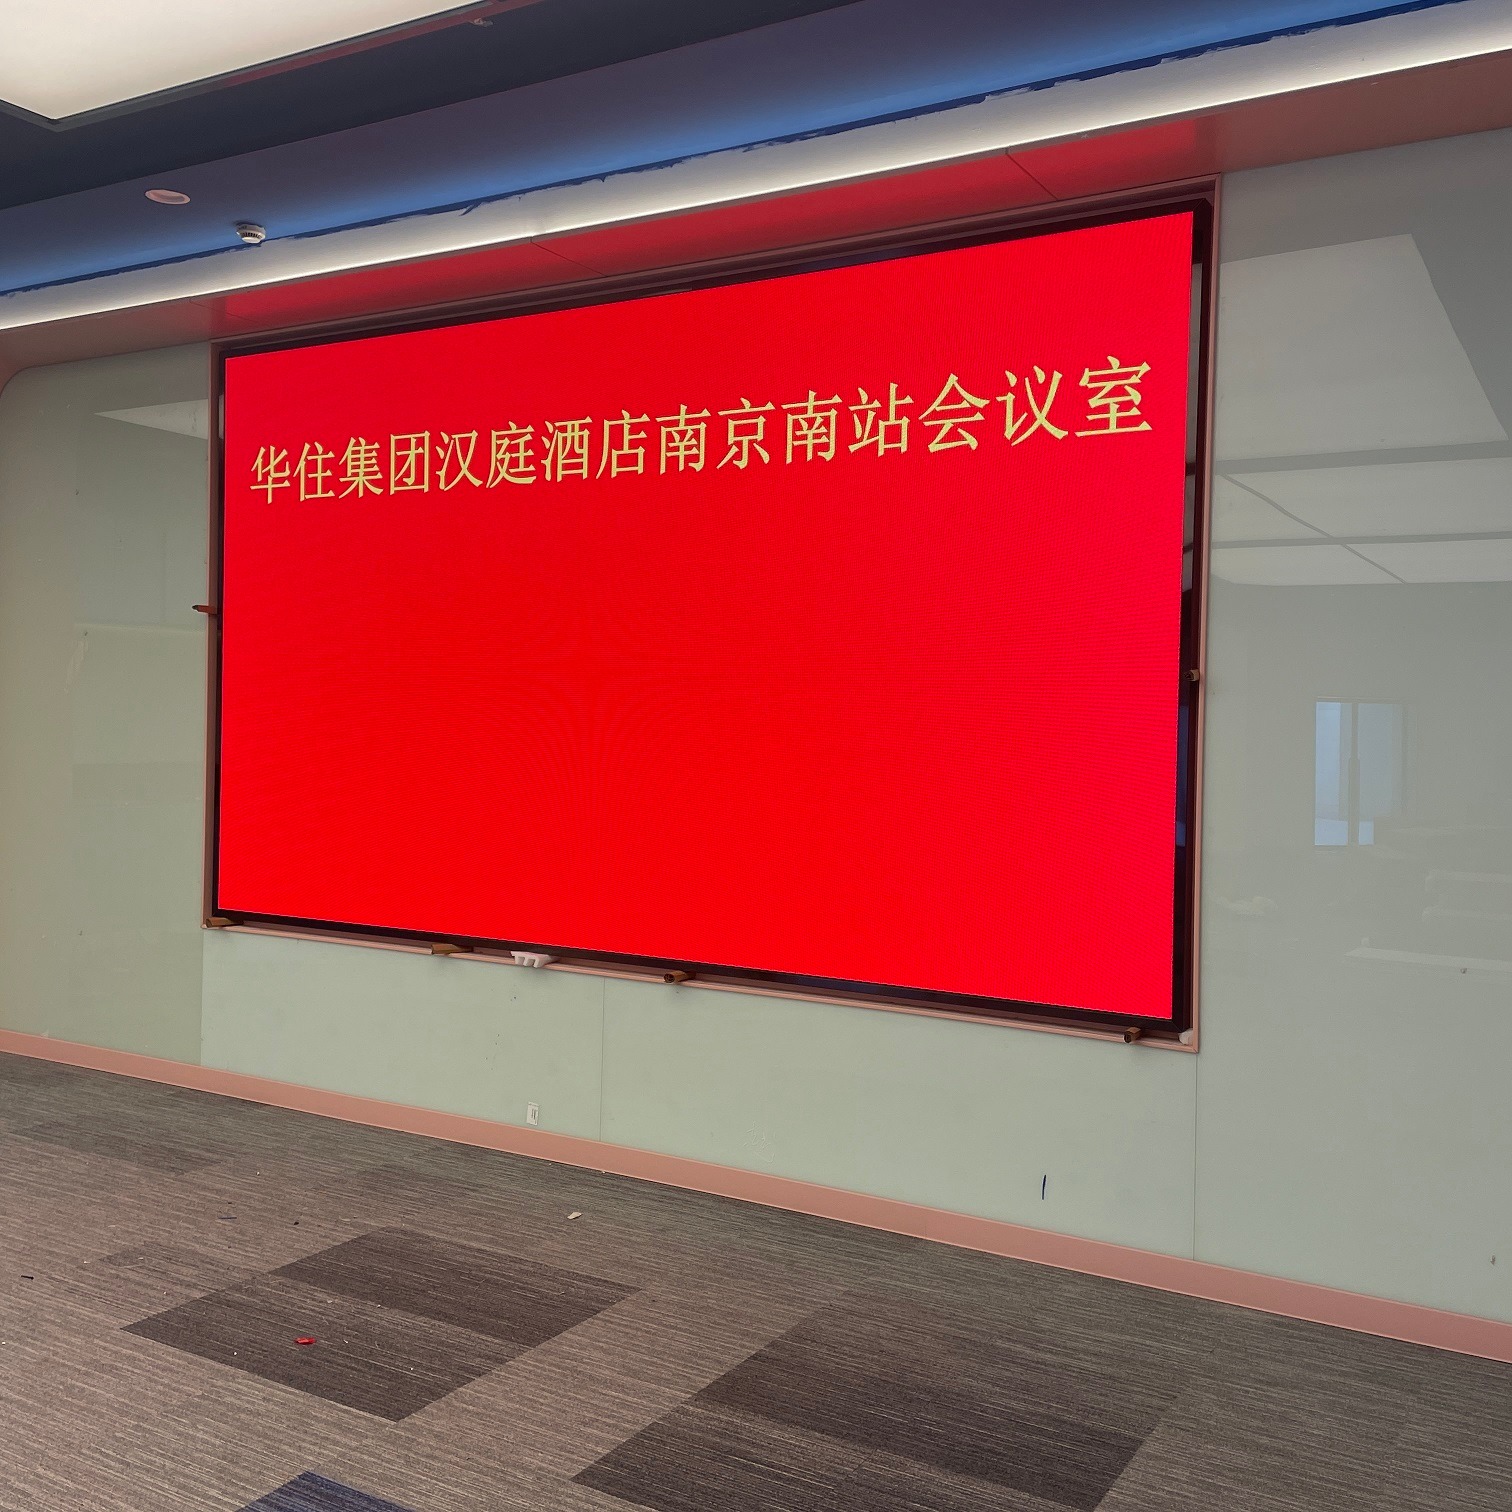 北京LED显示屏公司 北京LED电子屏厂家 室内全彩屏 LED小间距屏 海佳彩亮 洲明蓝普 高科 久屏 D2.5